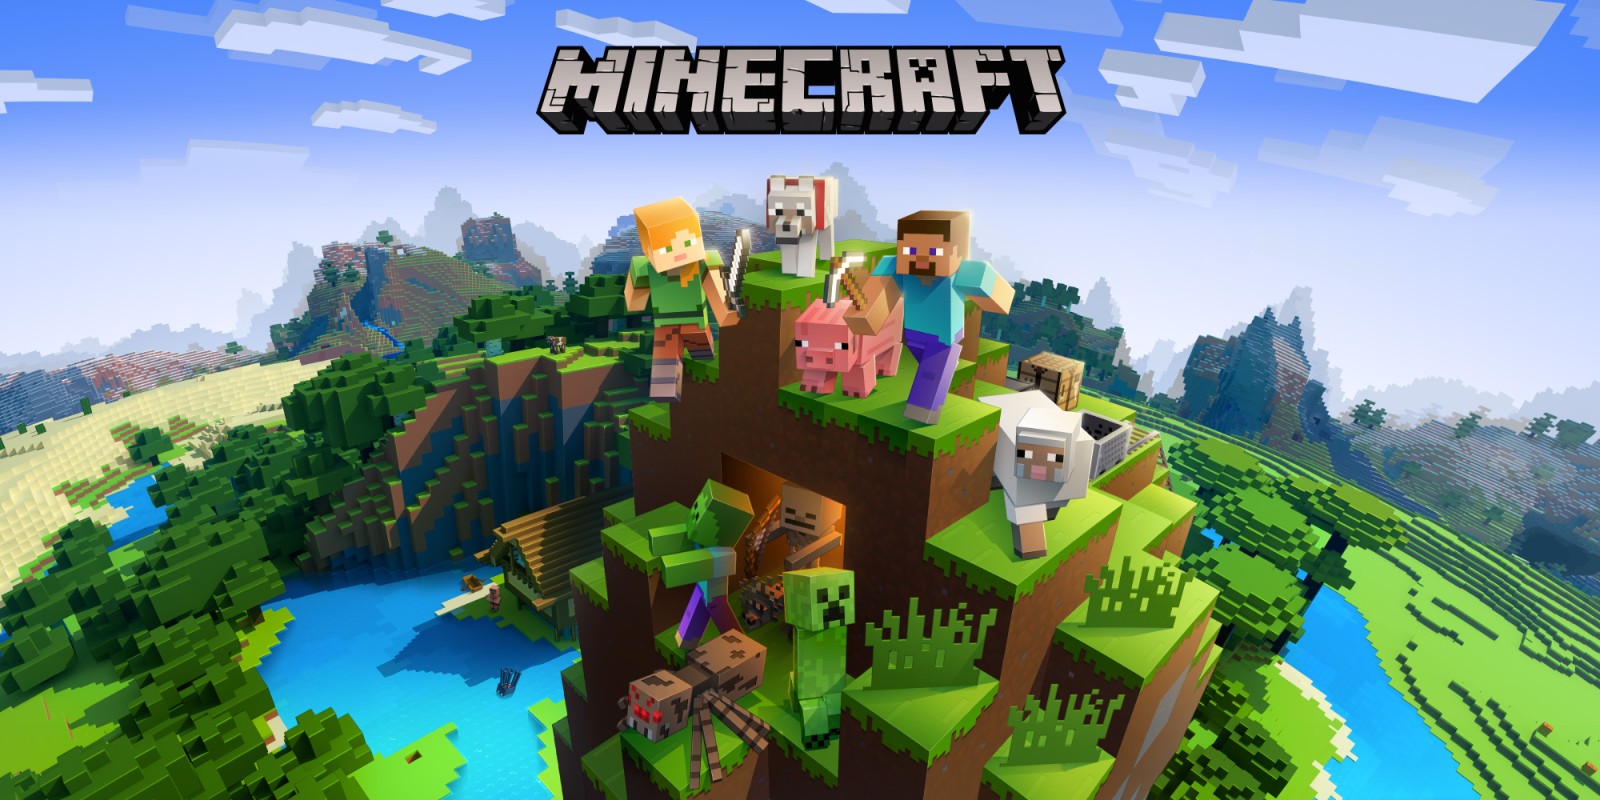 Banner Minecraft